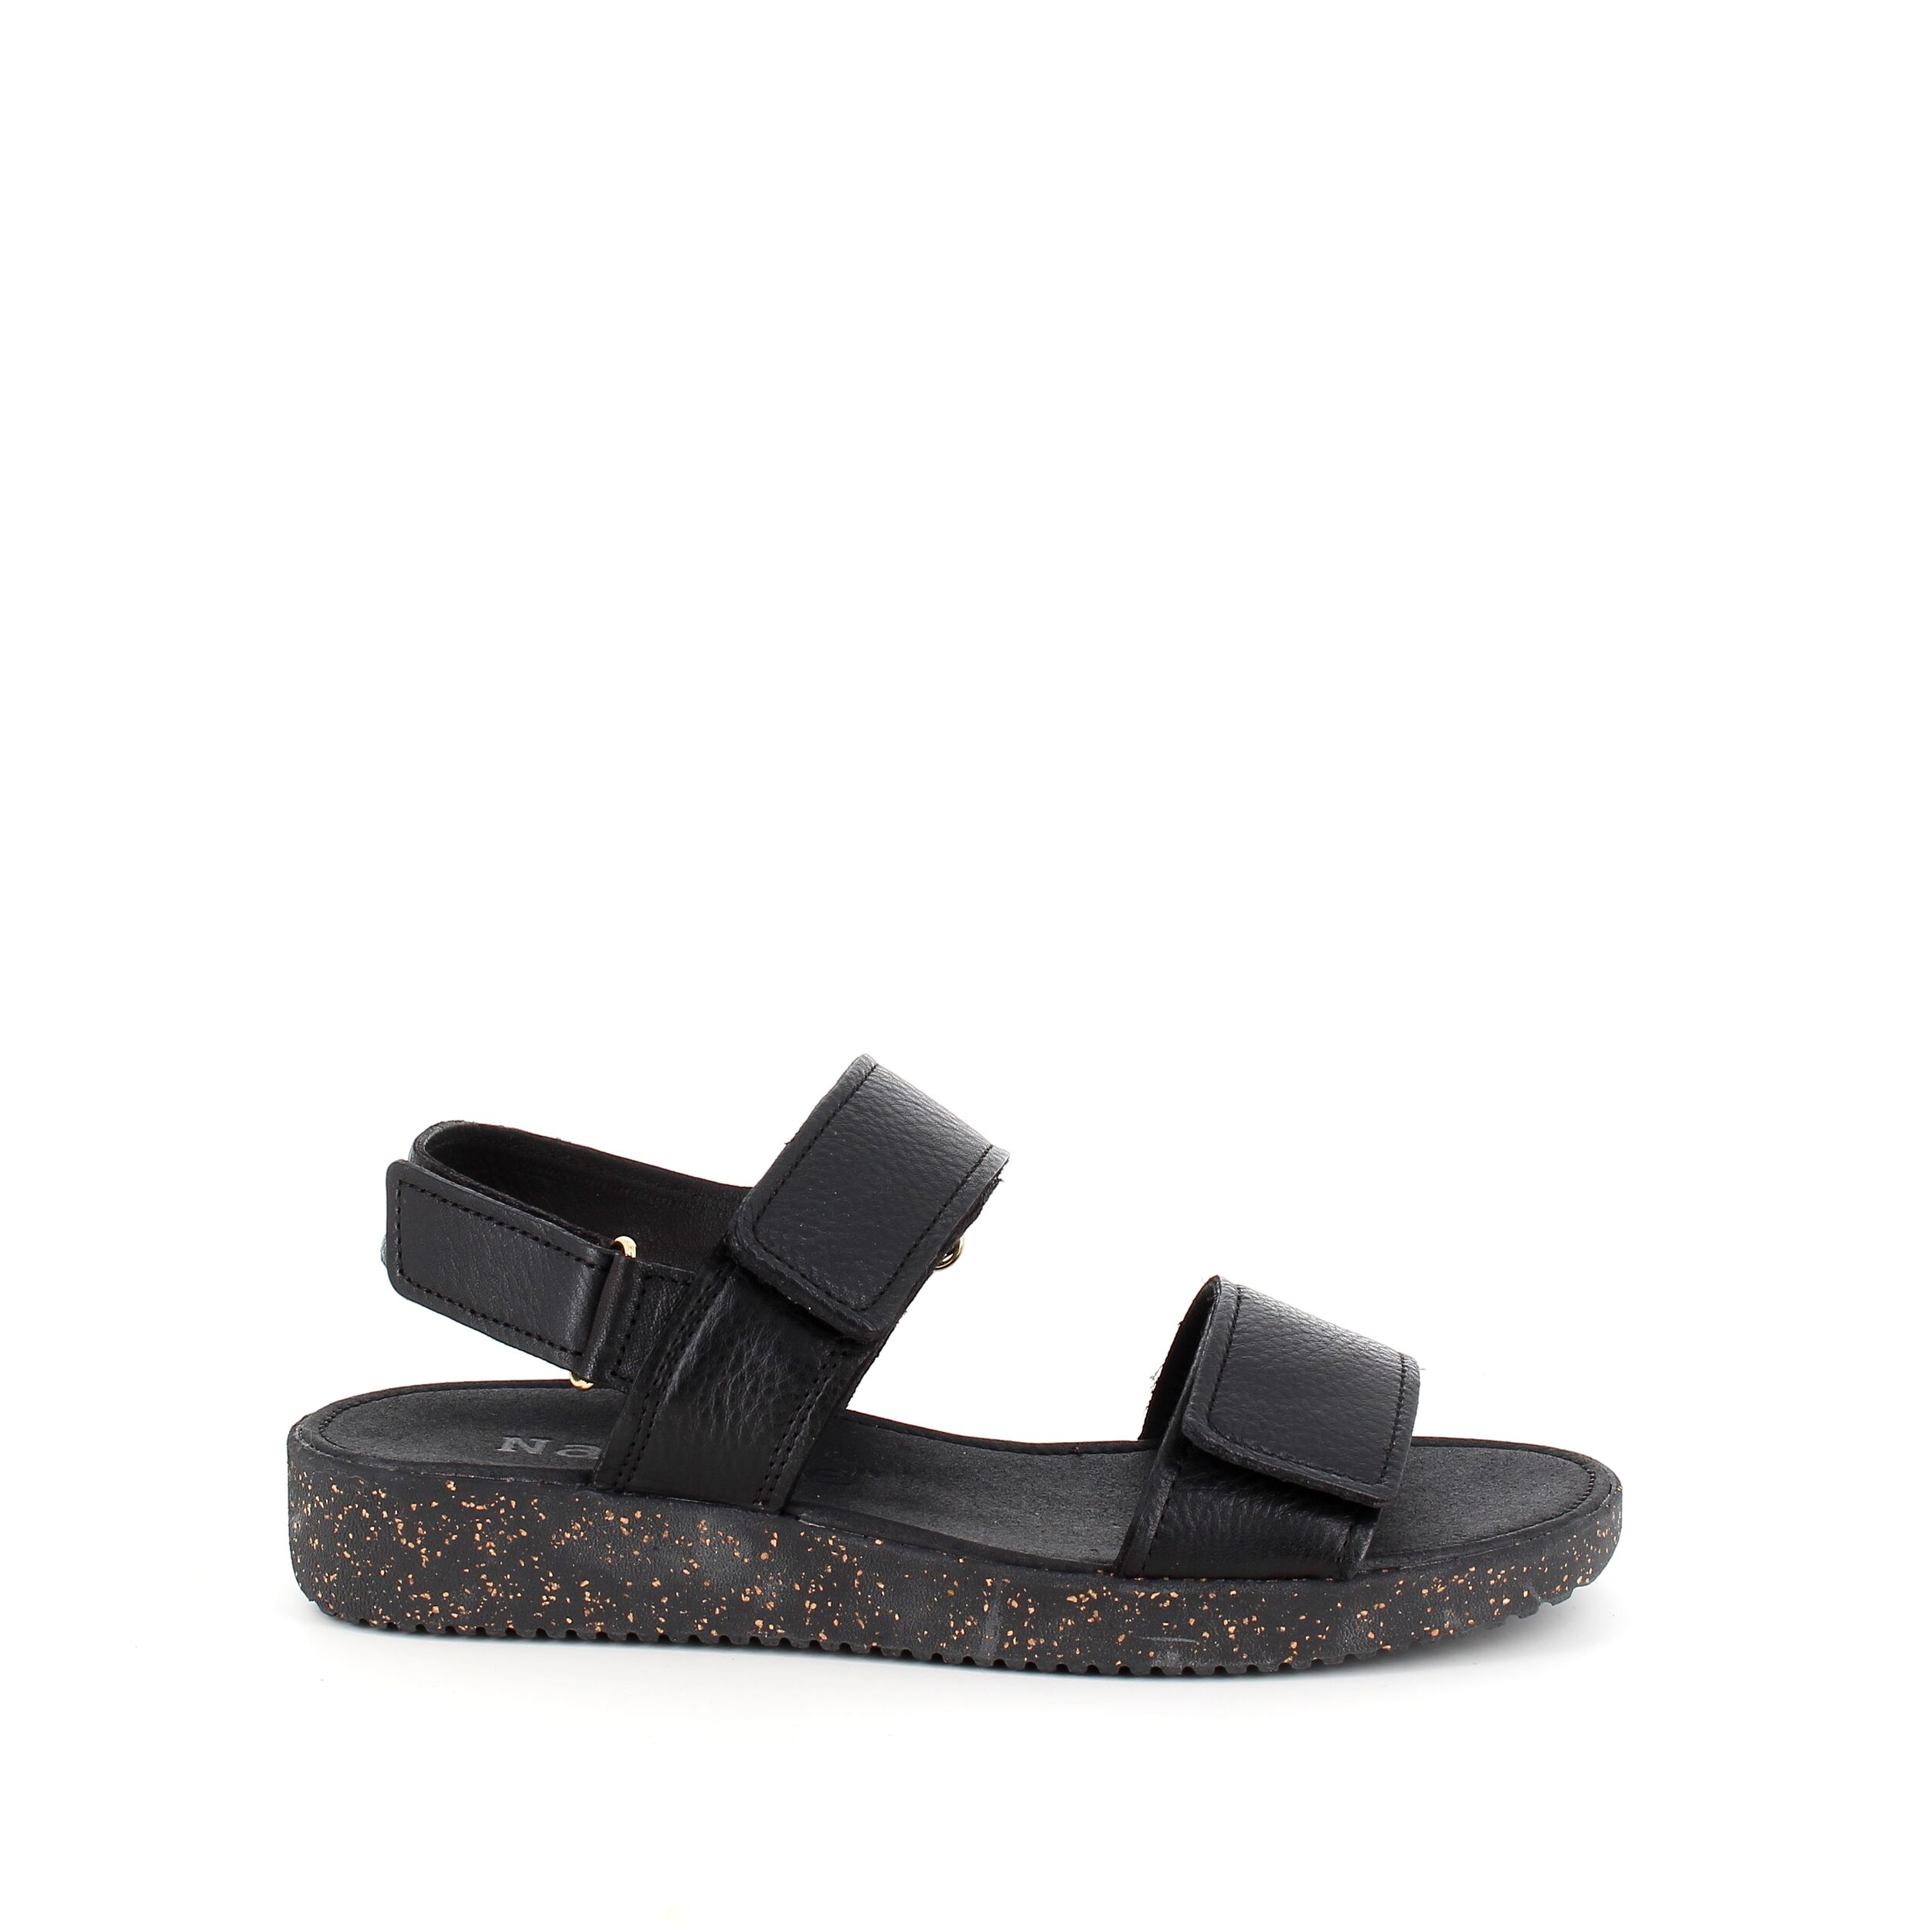 Se Nature sandal i sort skind med sorte såler - 36 hos Sygeplejebutikken.dk